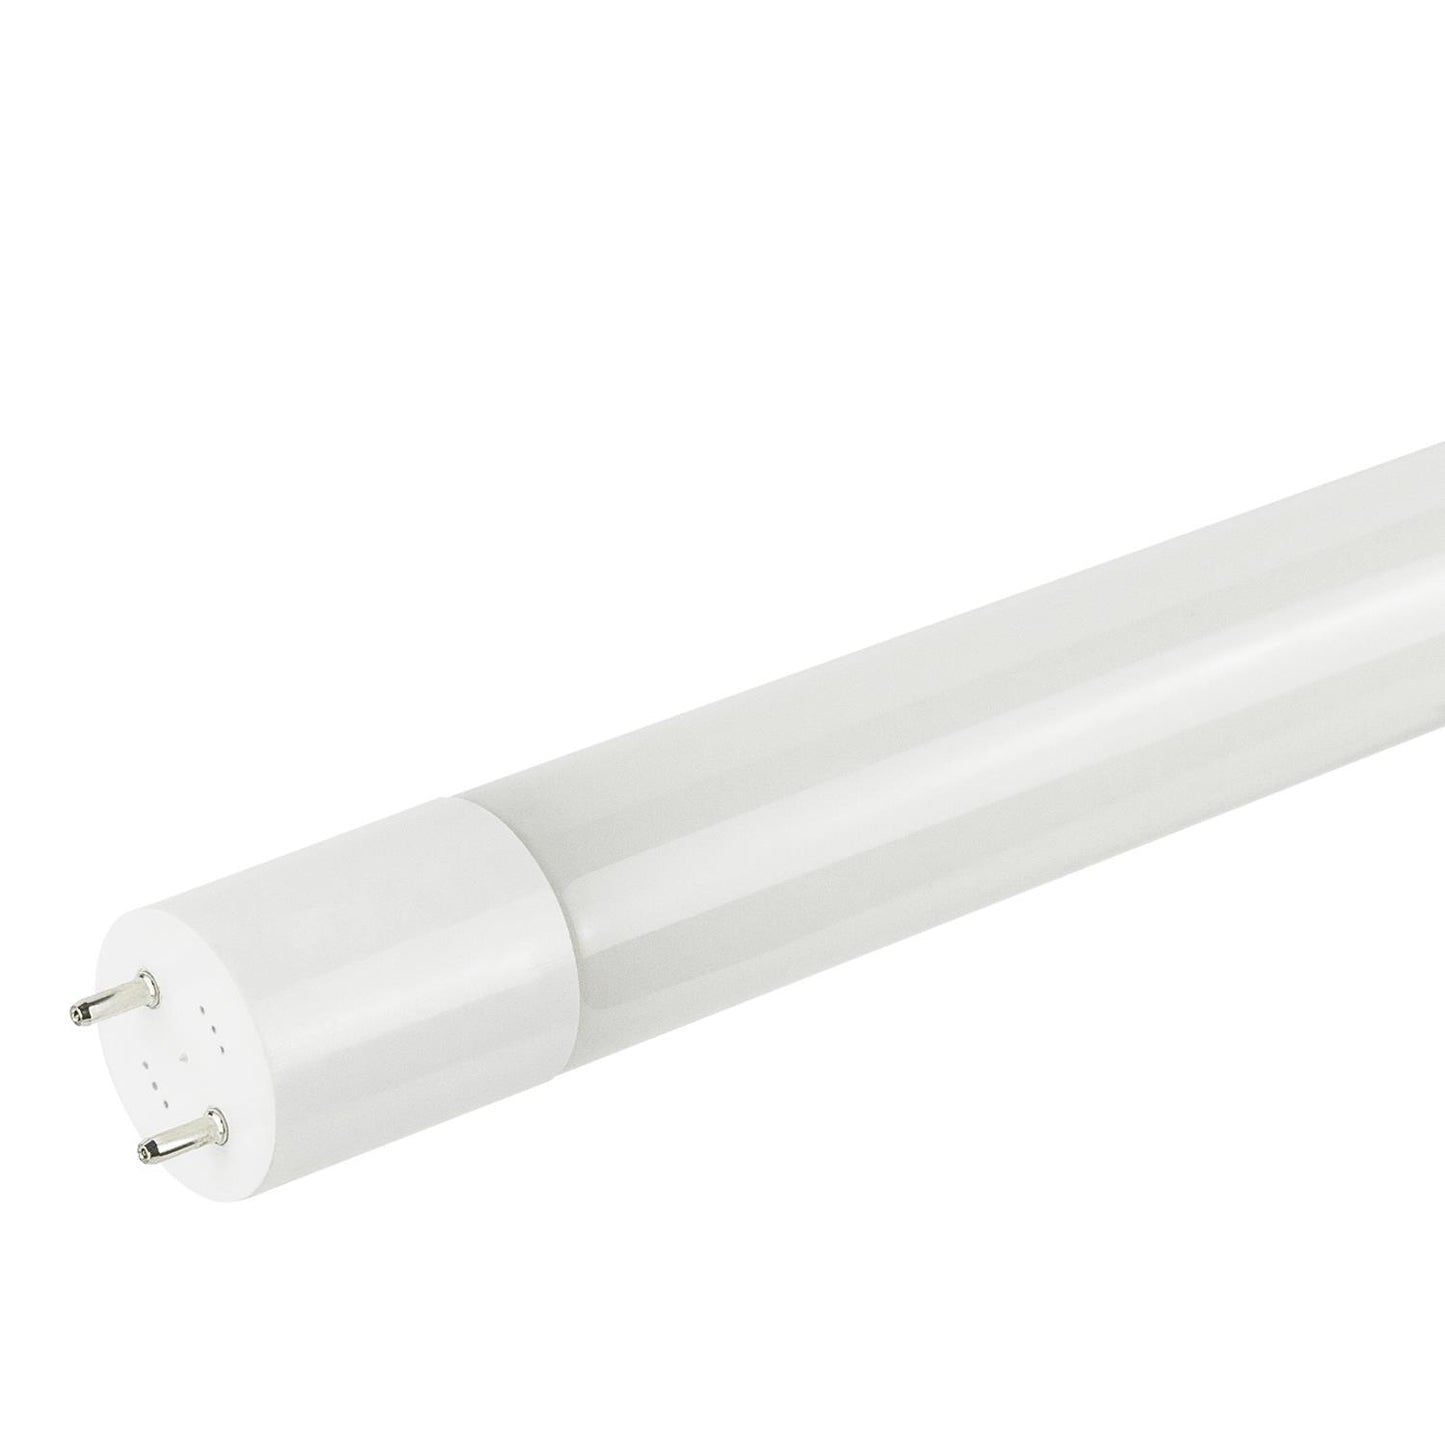 Sunlite T8/LED/IS/4'/15W/50K/PPS 15 Watt T8 Lamp Medium Bi-Pin (G13) Base Super White